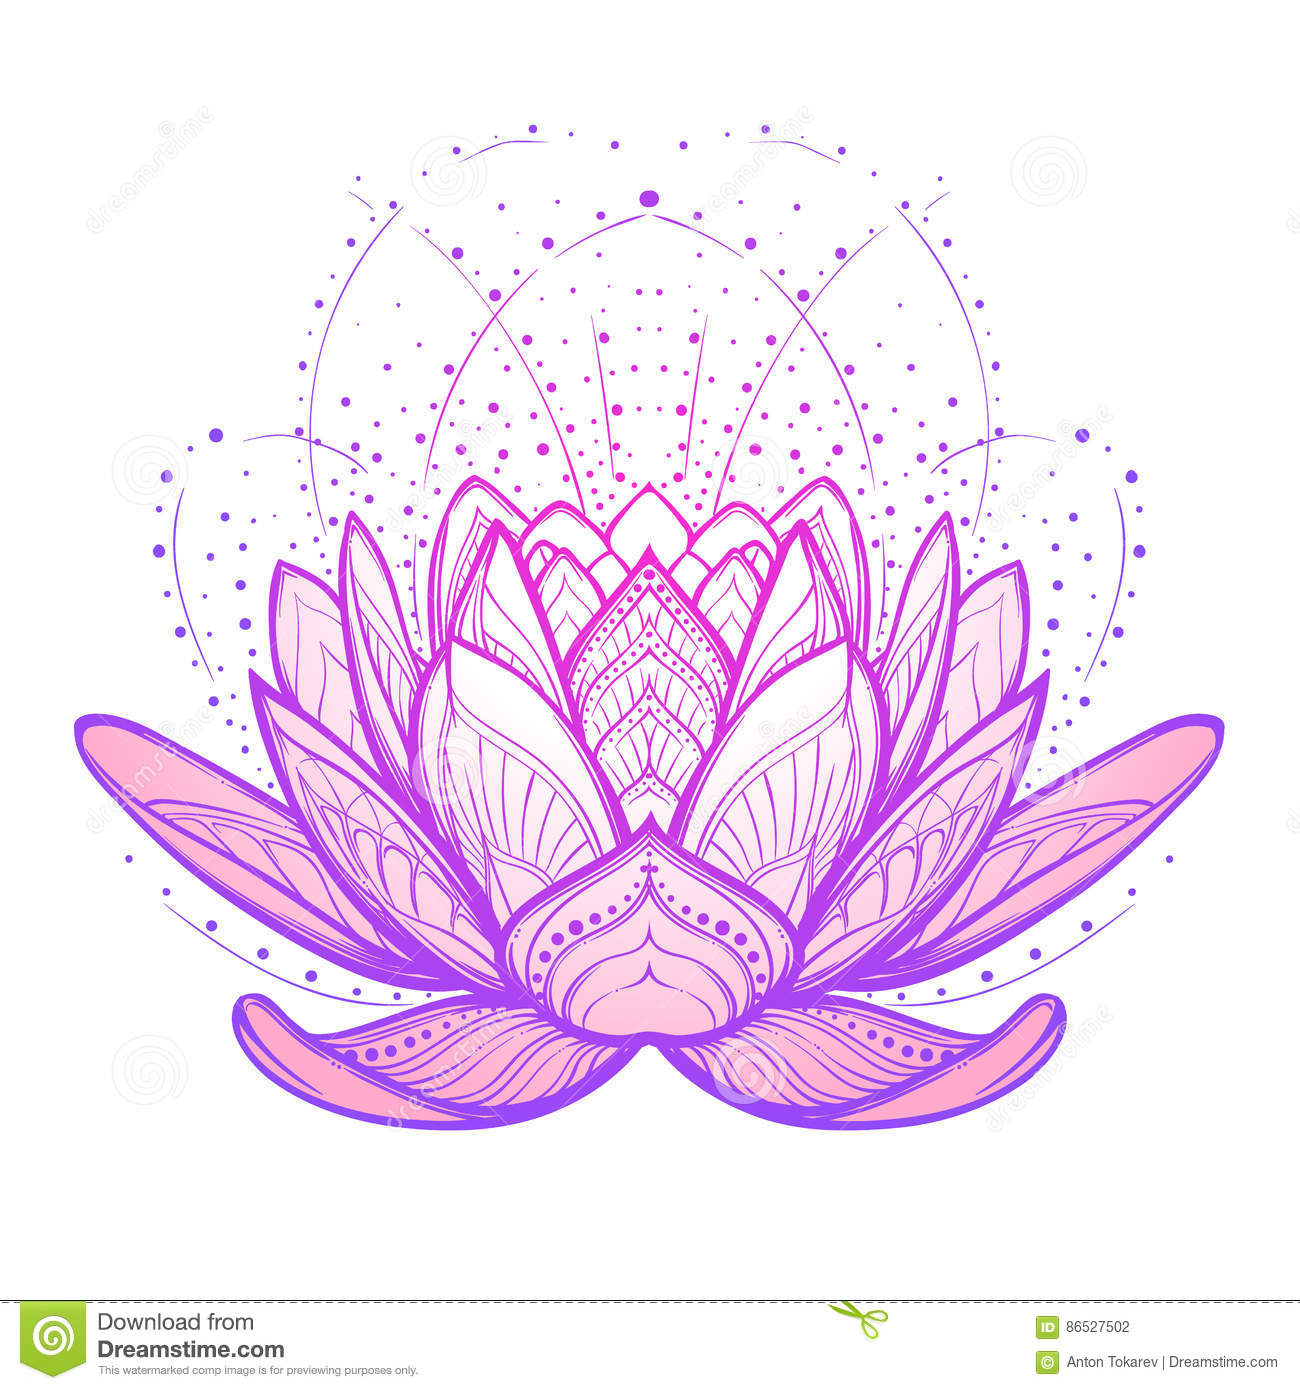 Dernière Dessin Fleur De Lotus Stylise - The Vegen Princess tout Dessin Fleur De Lotus A Imprimer 